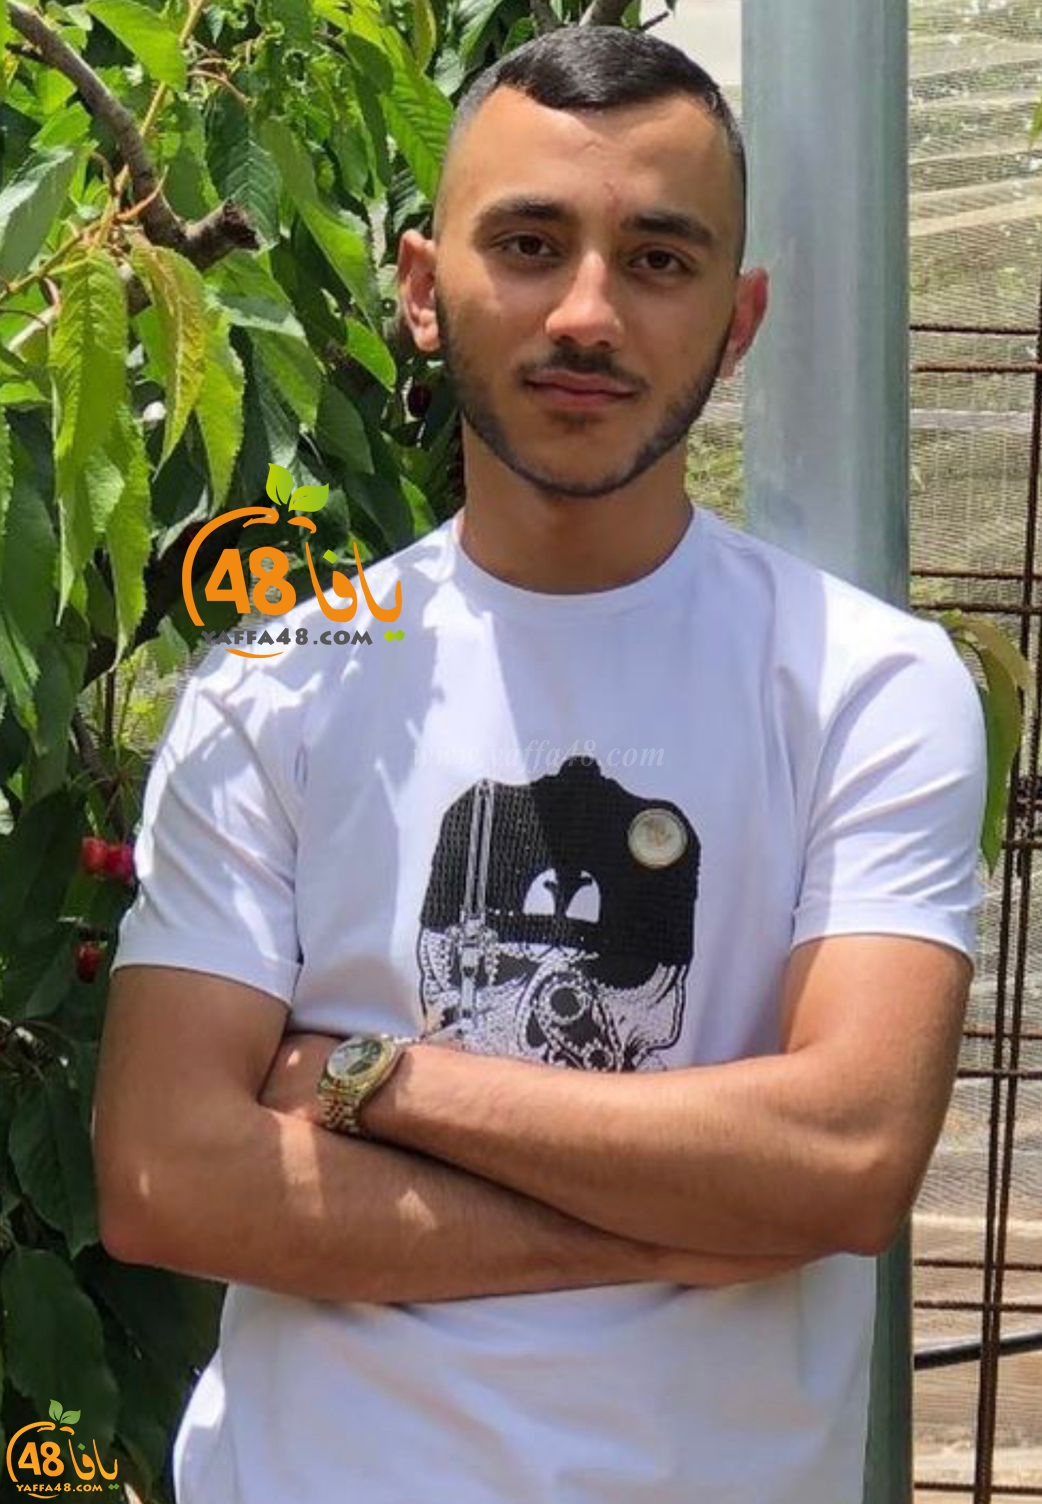  اللد: مصرع الشاب أنس الوحواح 18 عاماً بجريمة اطلاق نار